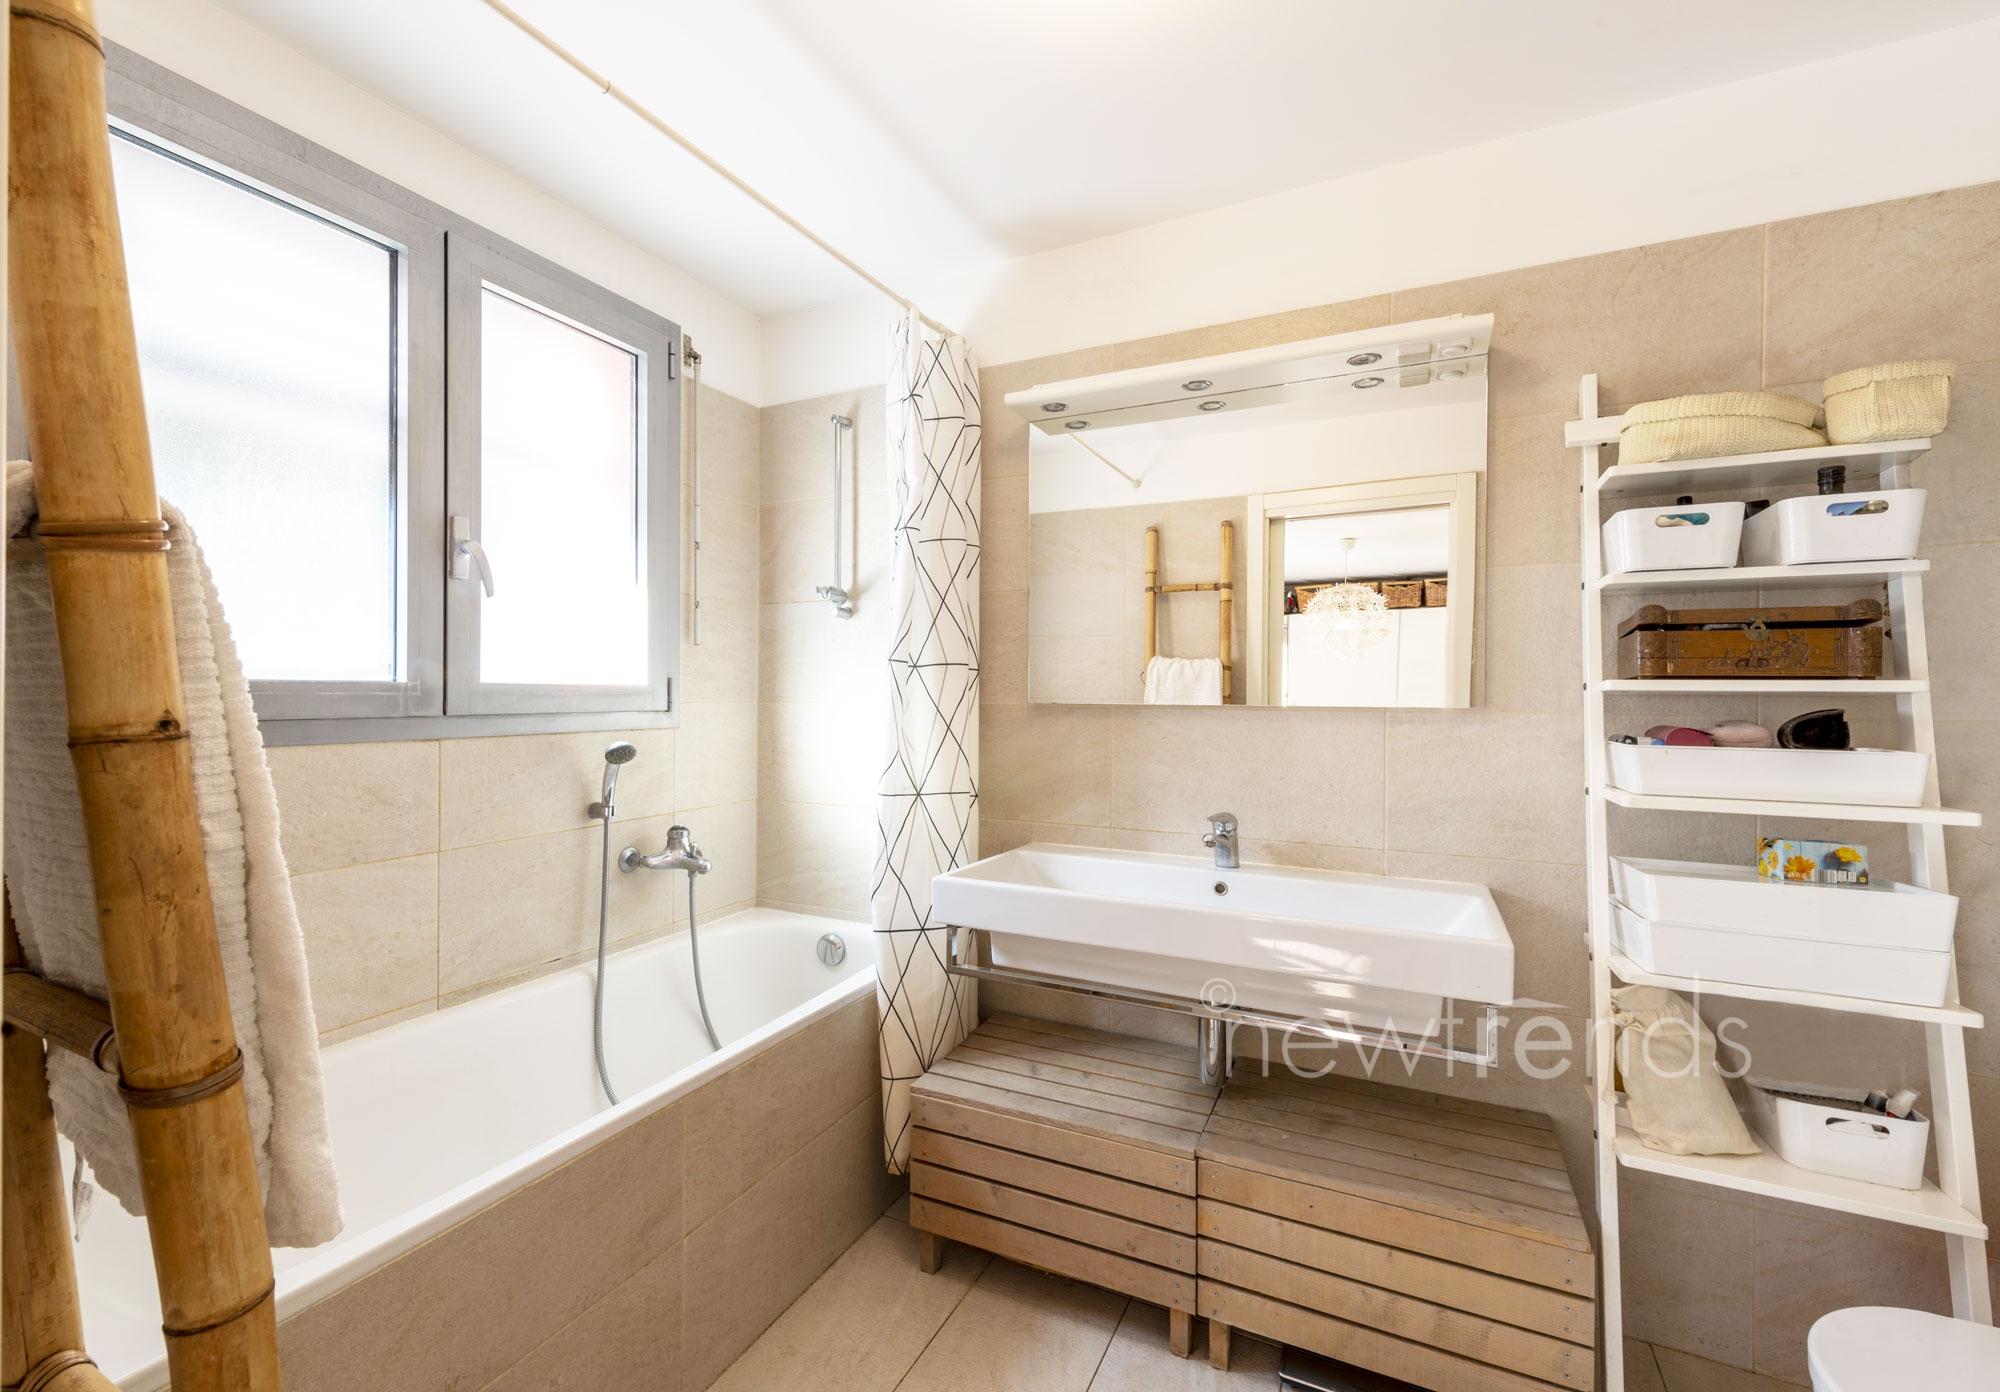 vendesi appartamento moderno con ampia terrazza coperta e giardino a gravesano: foto bagno con vasca